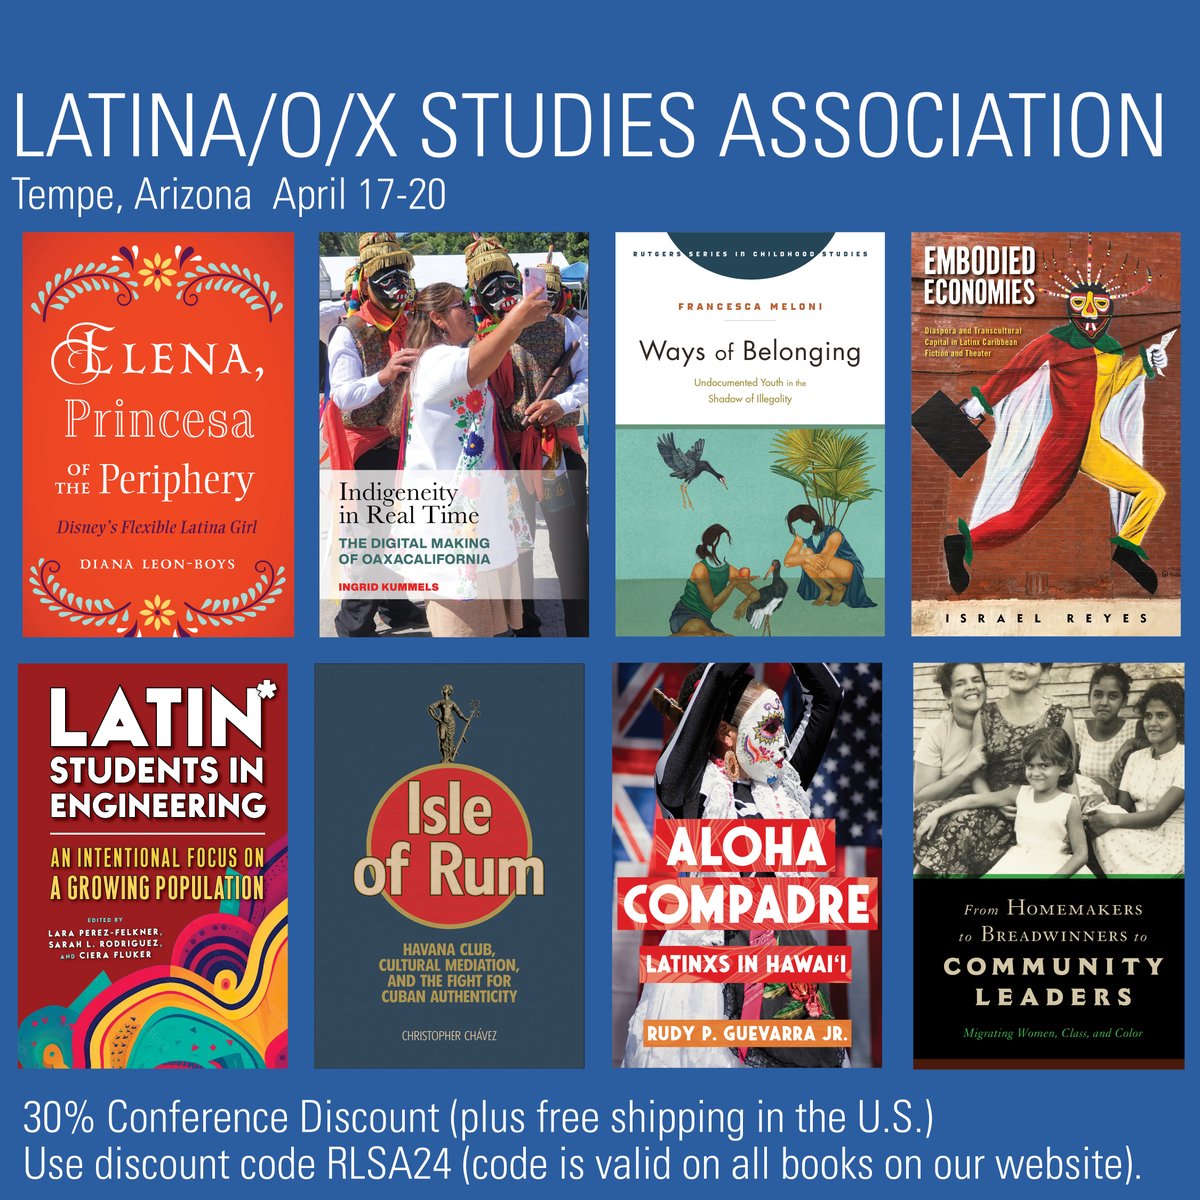 Visit us at the Association of Latina/o/x Studies Association Conference. 30% conference discount (+ free U.S. shipping). Use discount code: RLSA24 rutgersuniversitypress.org/latina-o-x-stu… #LSA24 #Latina #Latino #LatinX